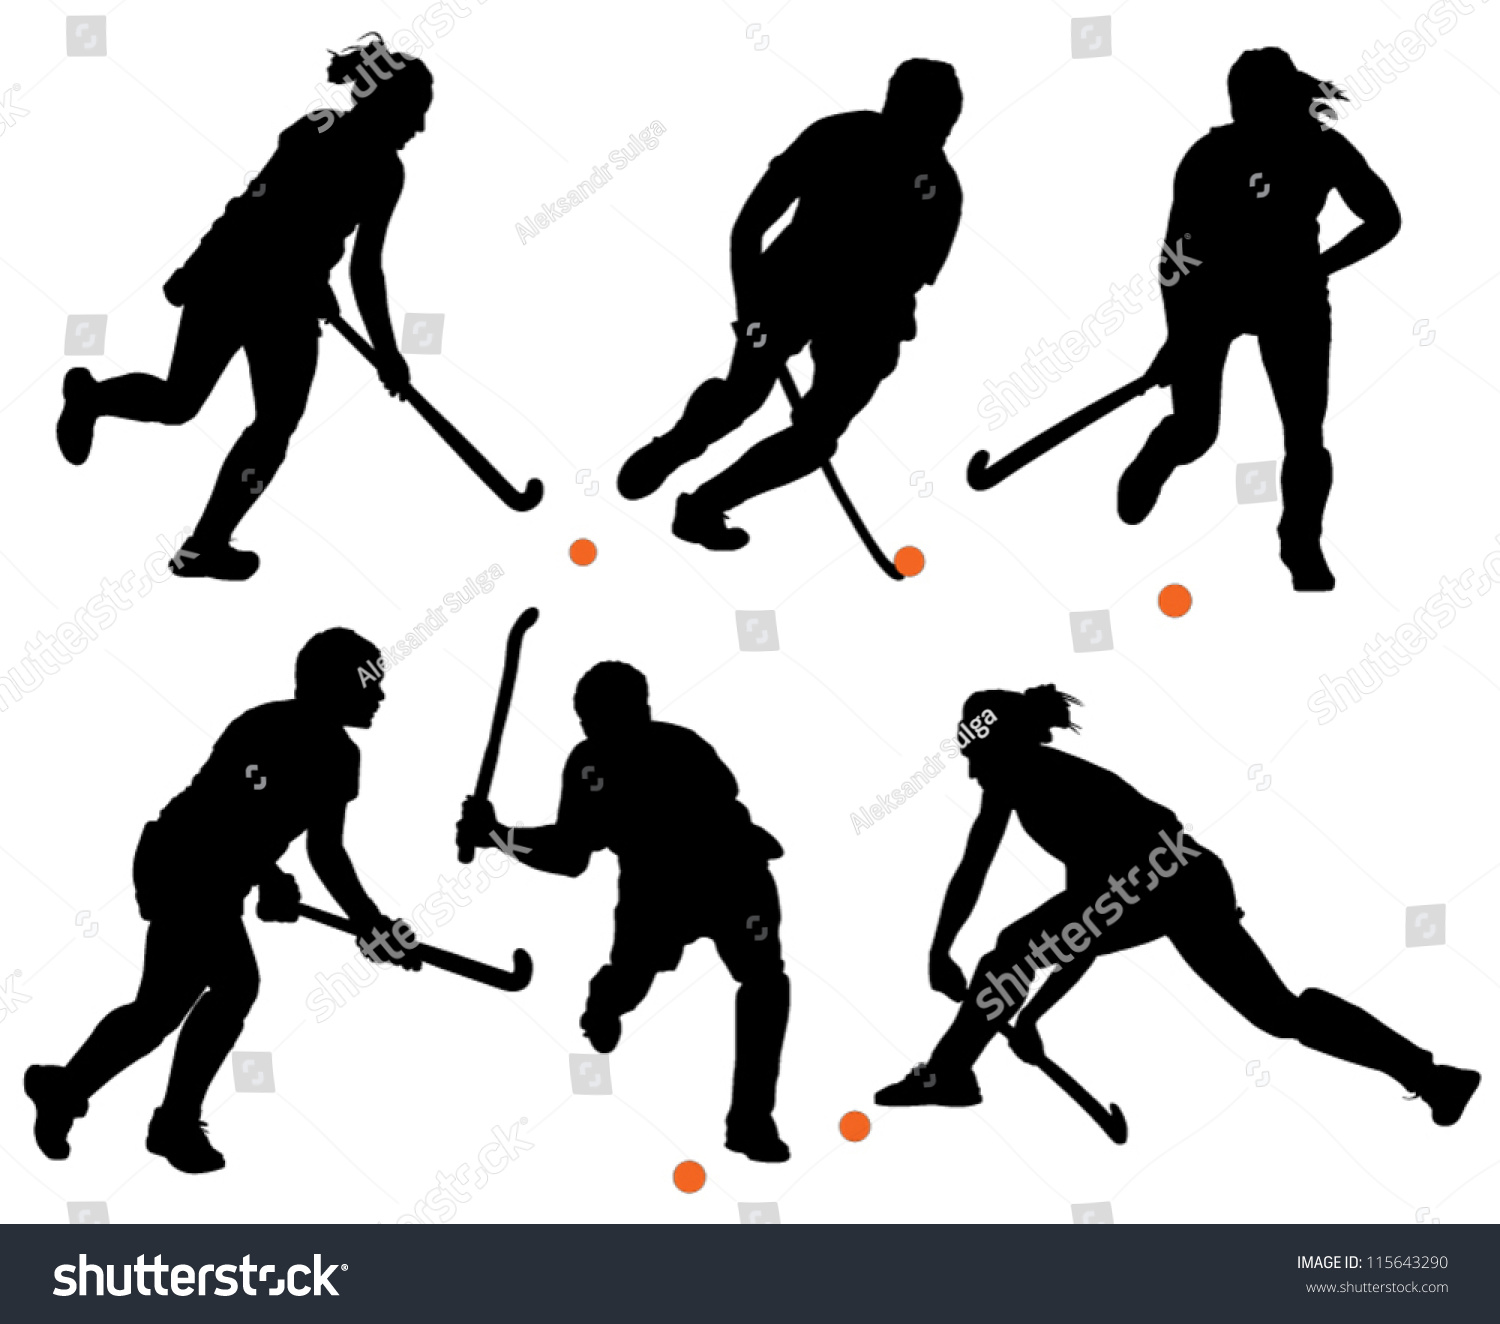 clip art illustrations field hockey - photo #25